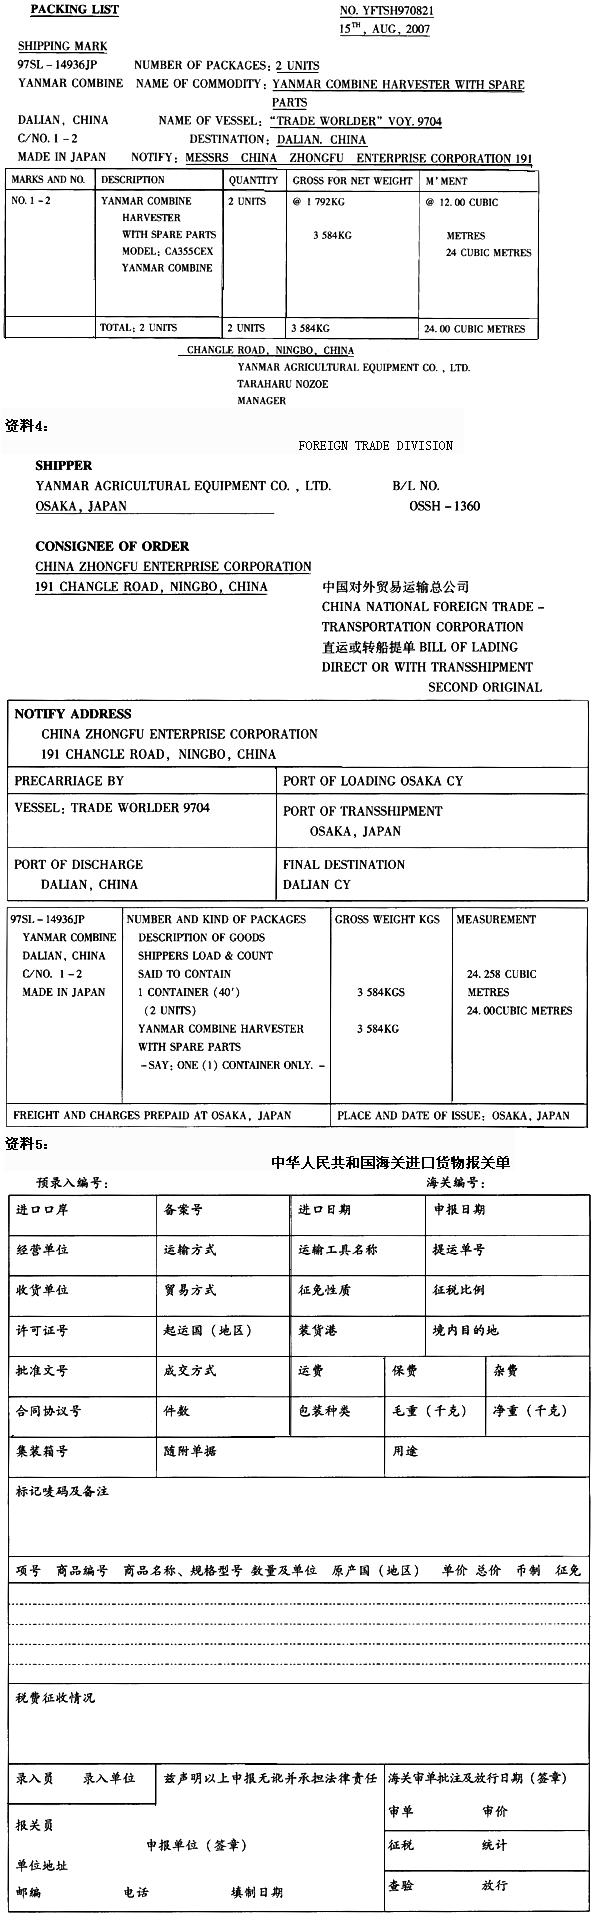 资料1： 中国中福实业总公司代码：3103915009；收货单位同经营单位；特定商品进口登记证明： 